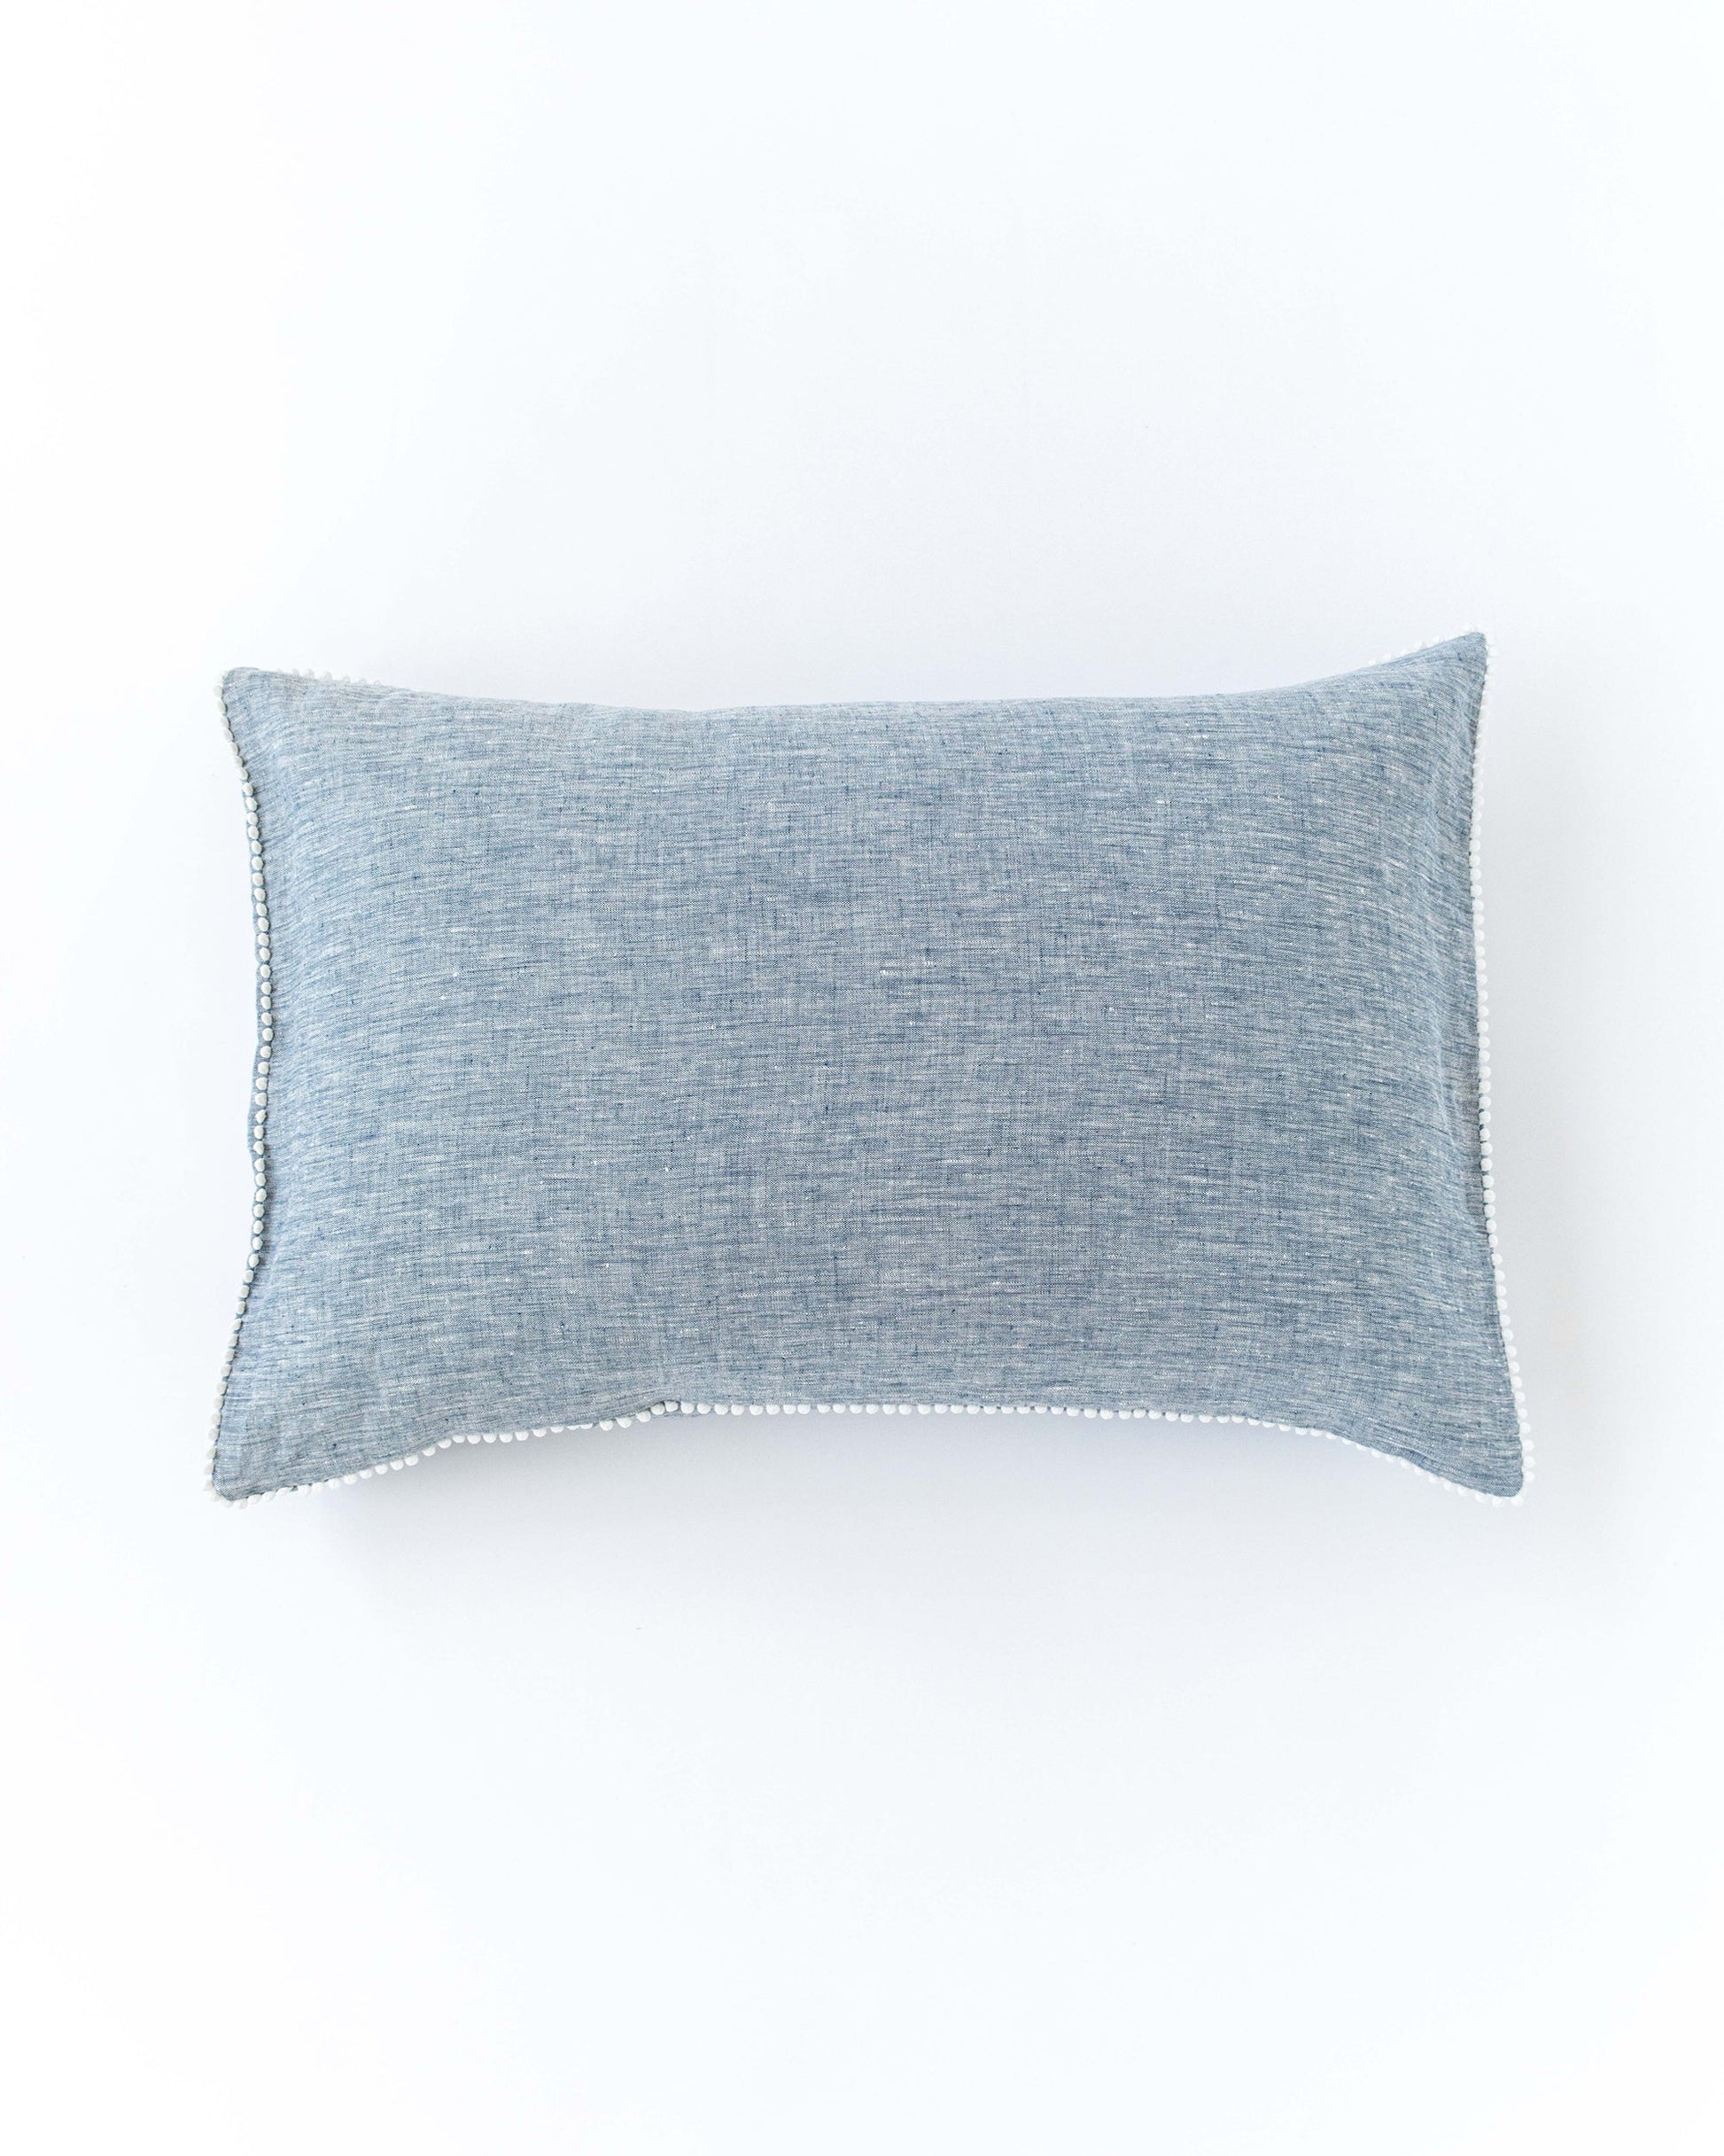 Pom pom trim linen pillowcase in Blue melange - MagicLinen